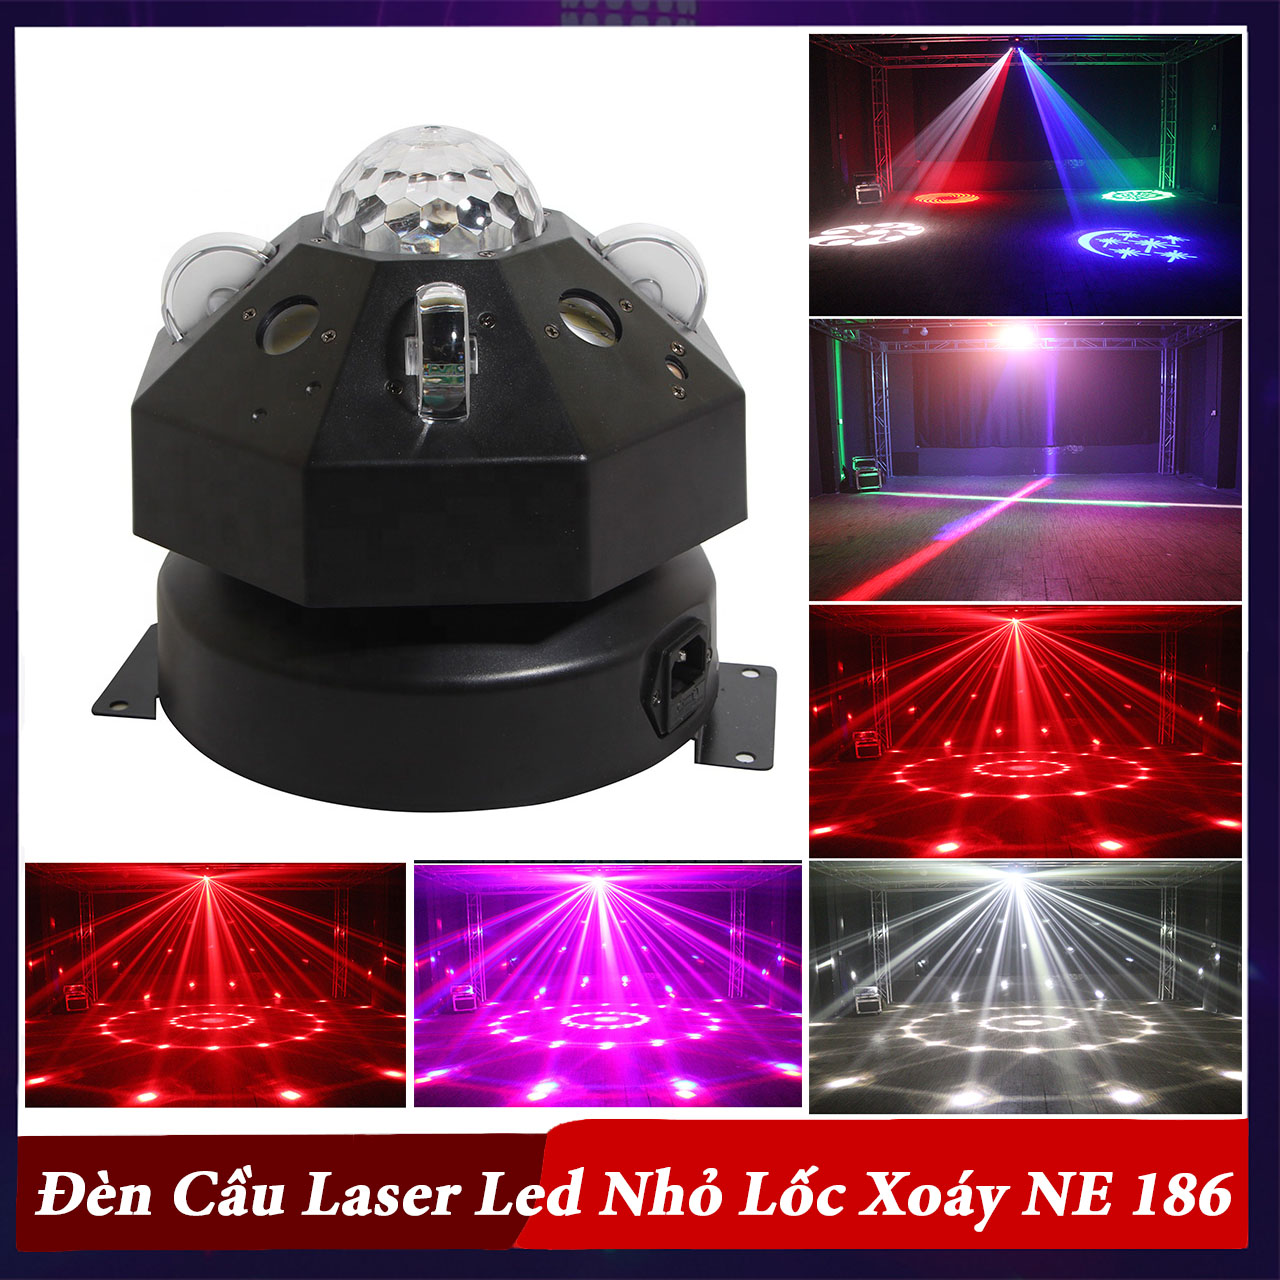 Đèn Cầu Laser Led Nhỏ Lốc Xoáy NE 186